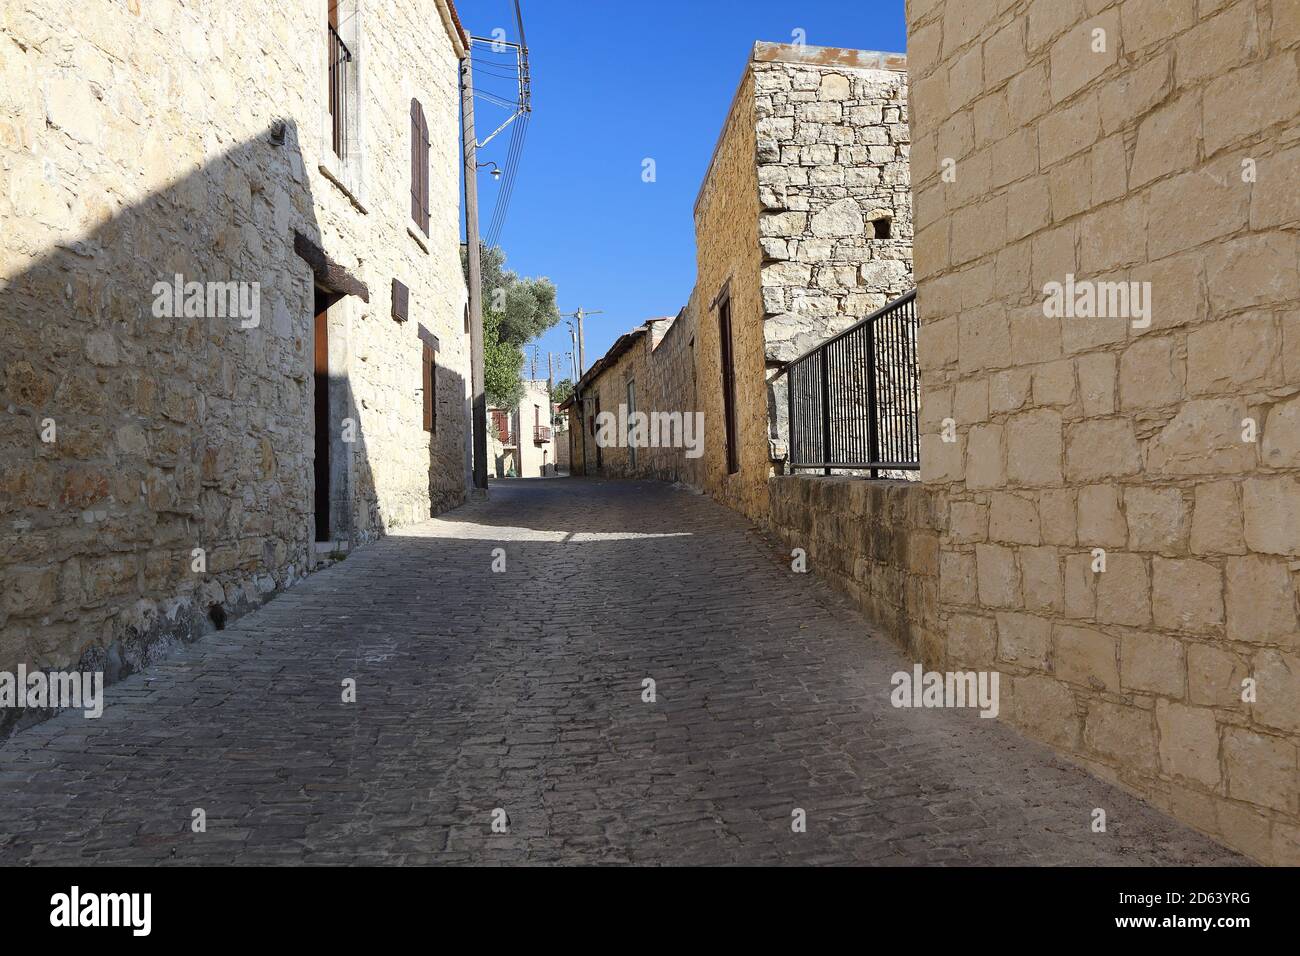 Leer, getrocknet, ohne Menschen schmale Straße in Zypern Dorf, traditionelle Schläuche, Gebäude aus Steinen gebaut, blauer Himmel Stockfoto